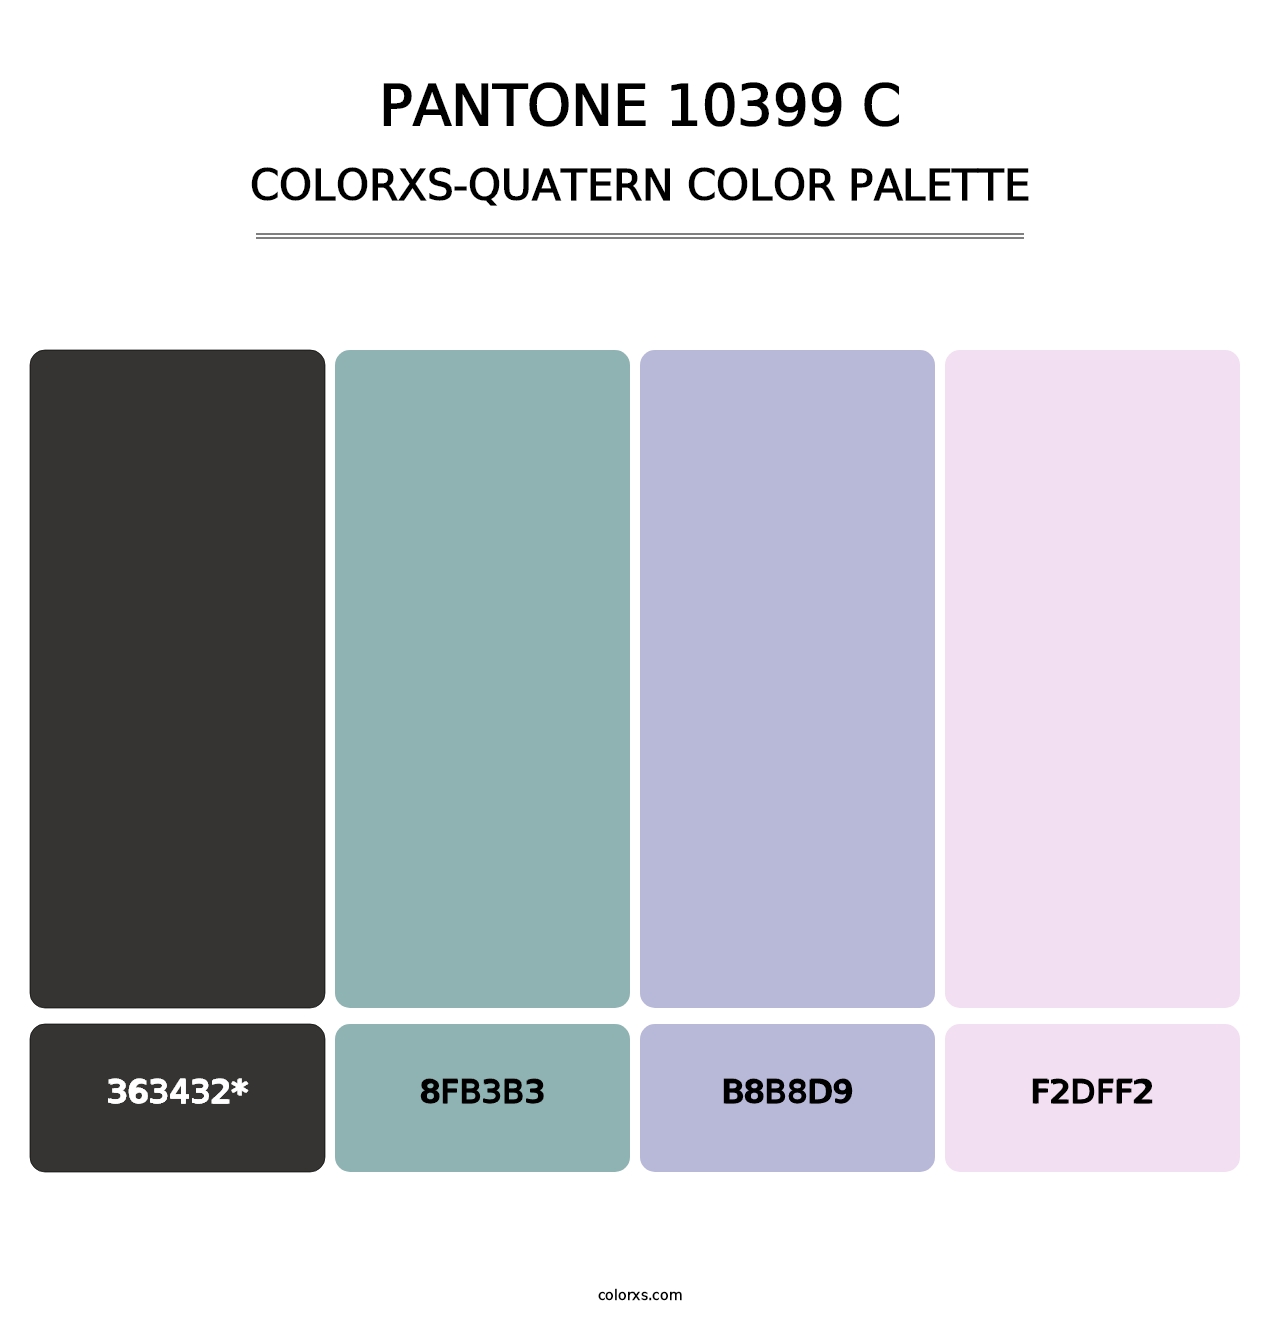 PANTONE 10399 C - Colorxs Quatern Palette